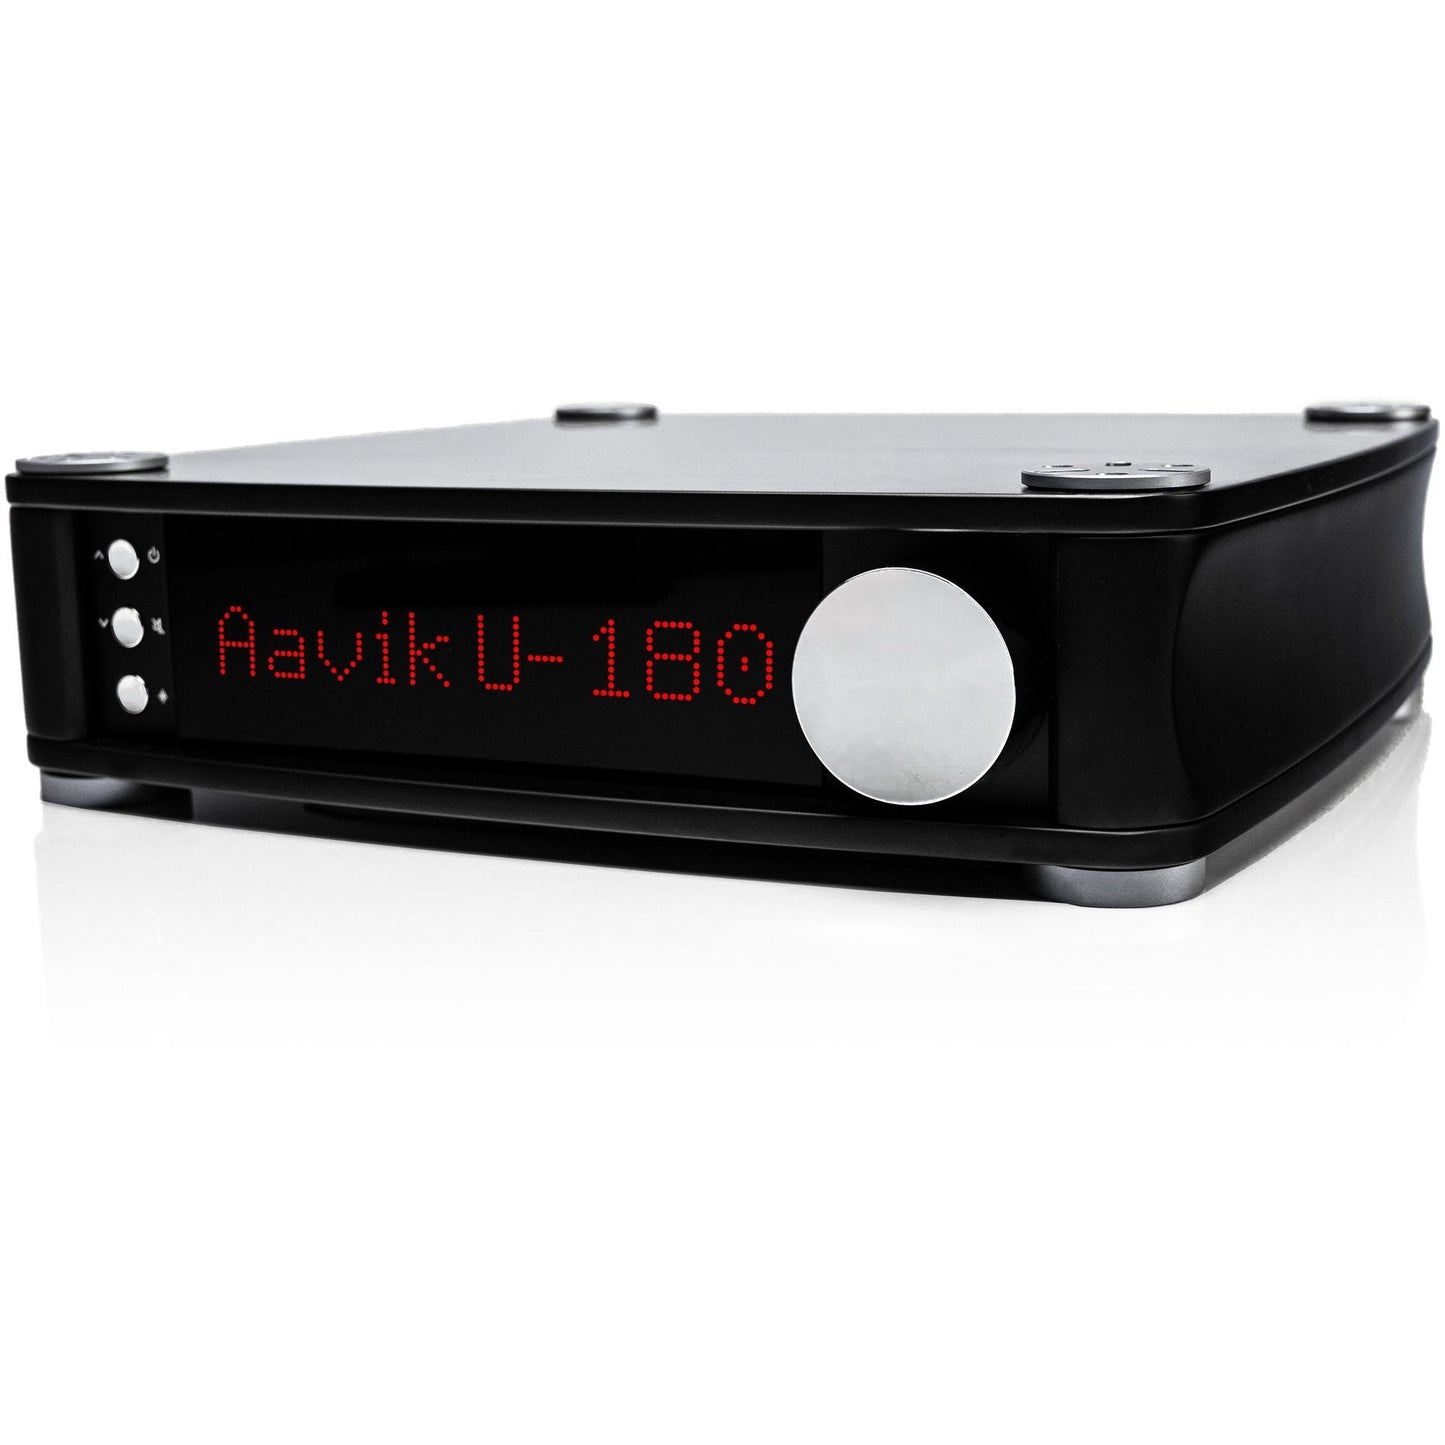 Aavik U-580 Uniti Integrated Amplifier